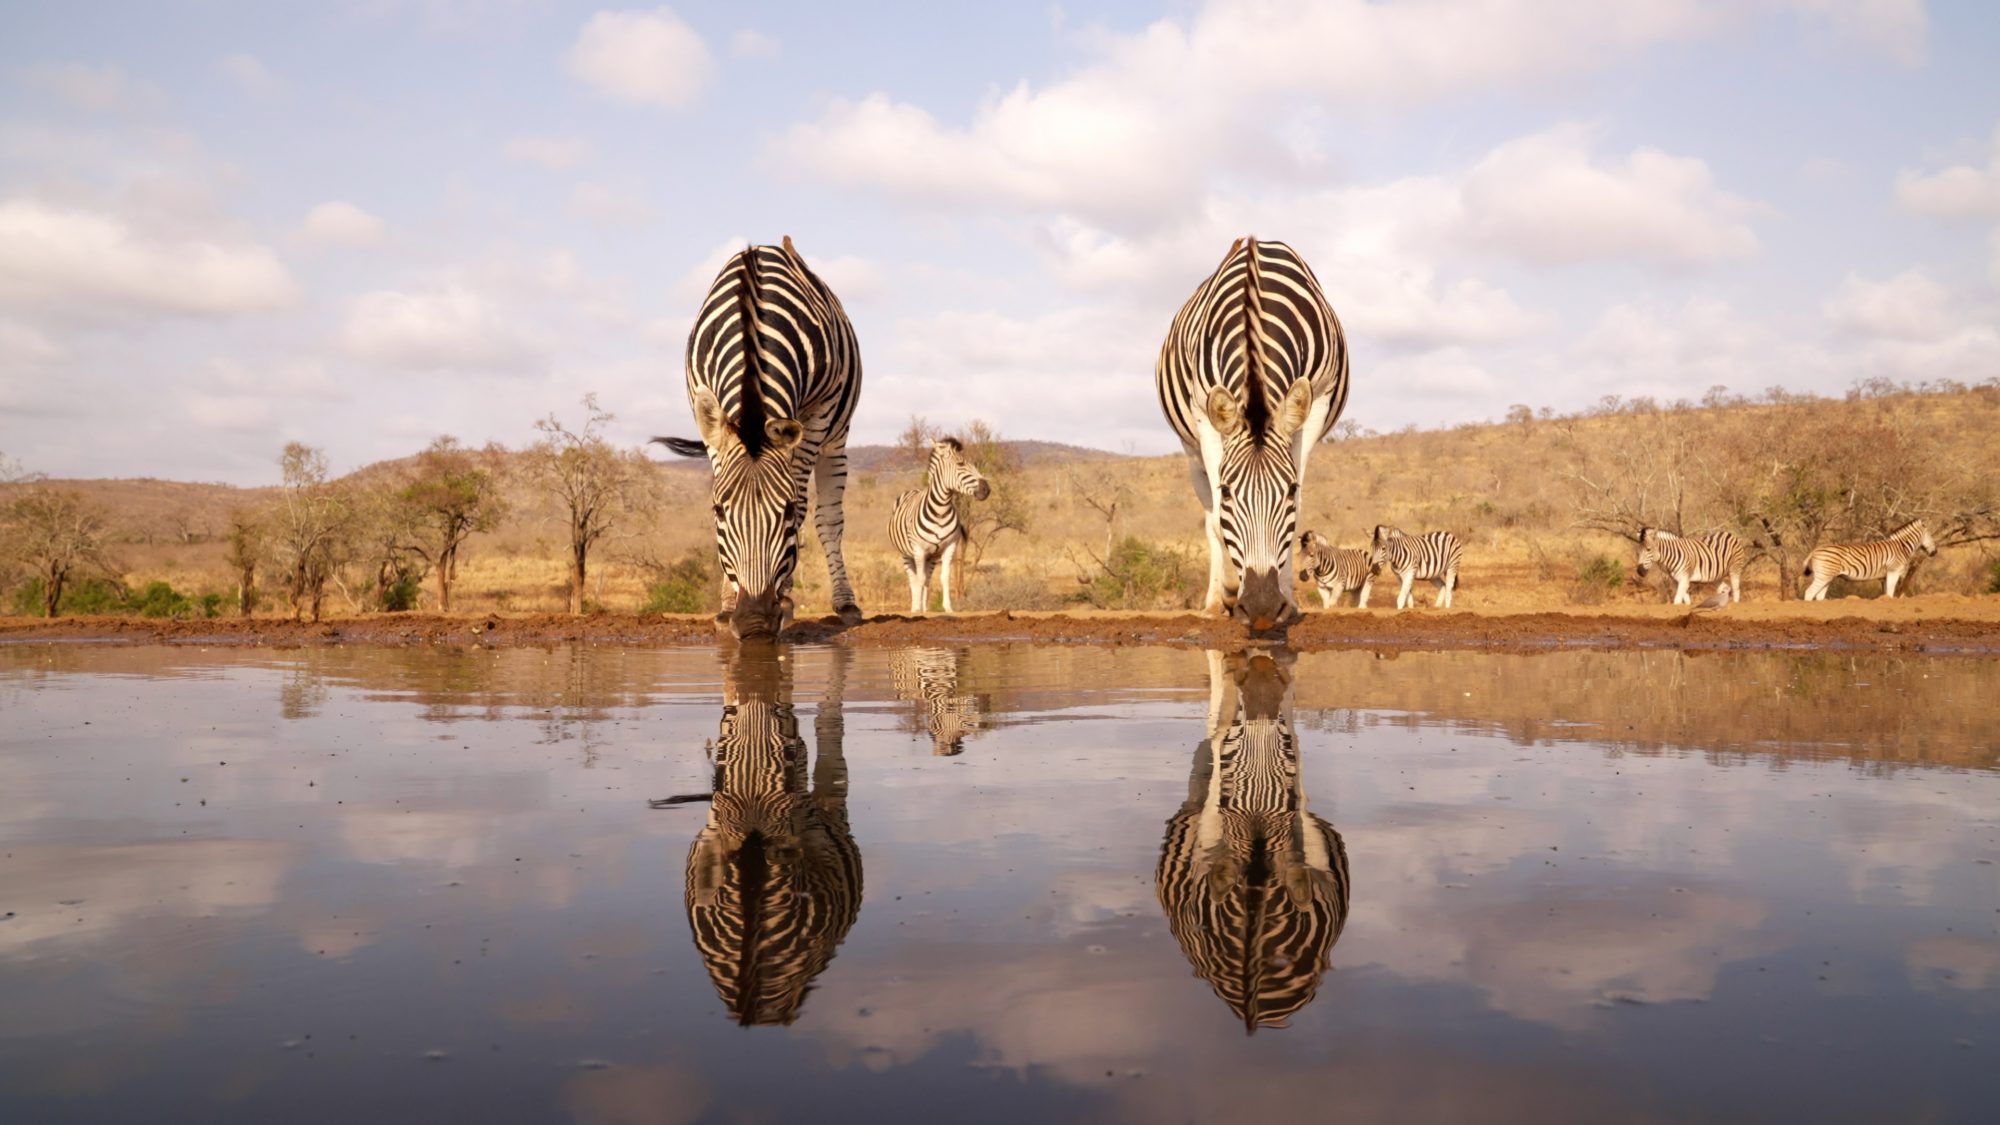 Zebras at the waterhole – Zimanga, South Africa 2022